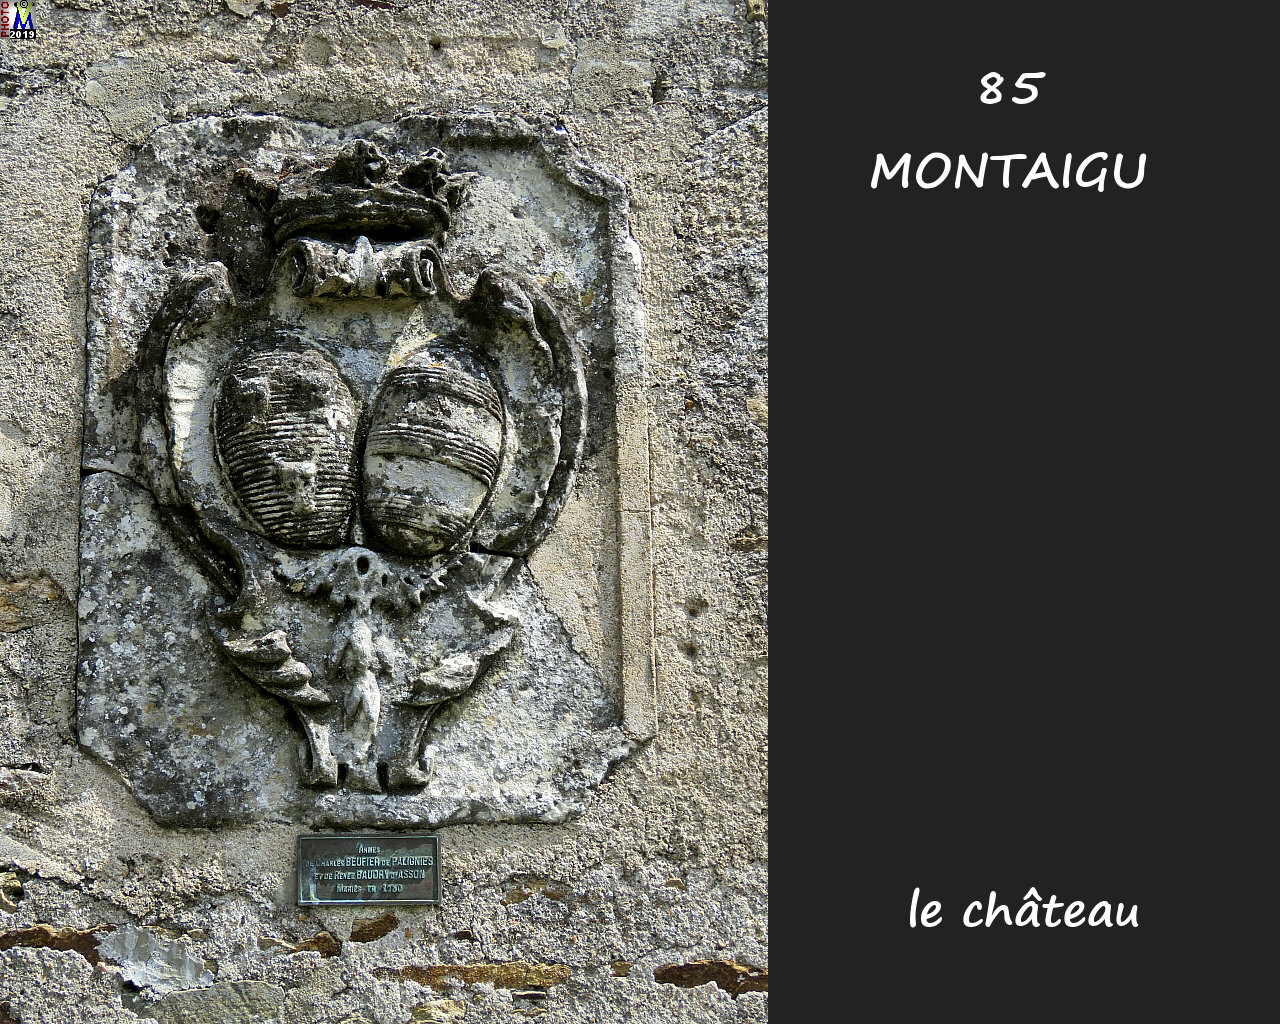 85MONTAIGU_chateau_1056.jpg